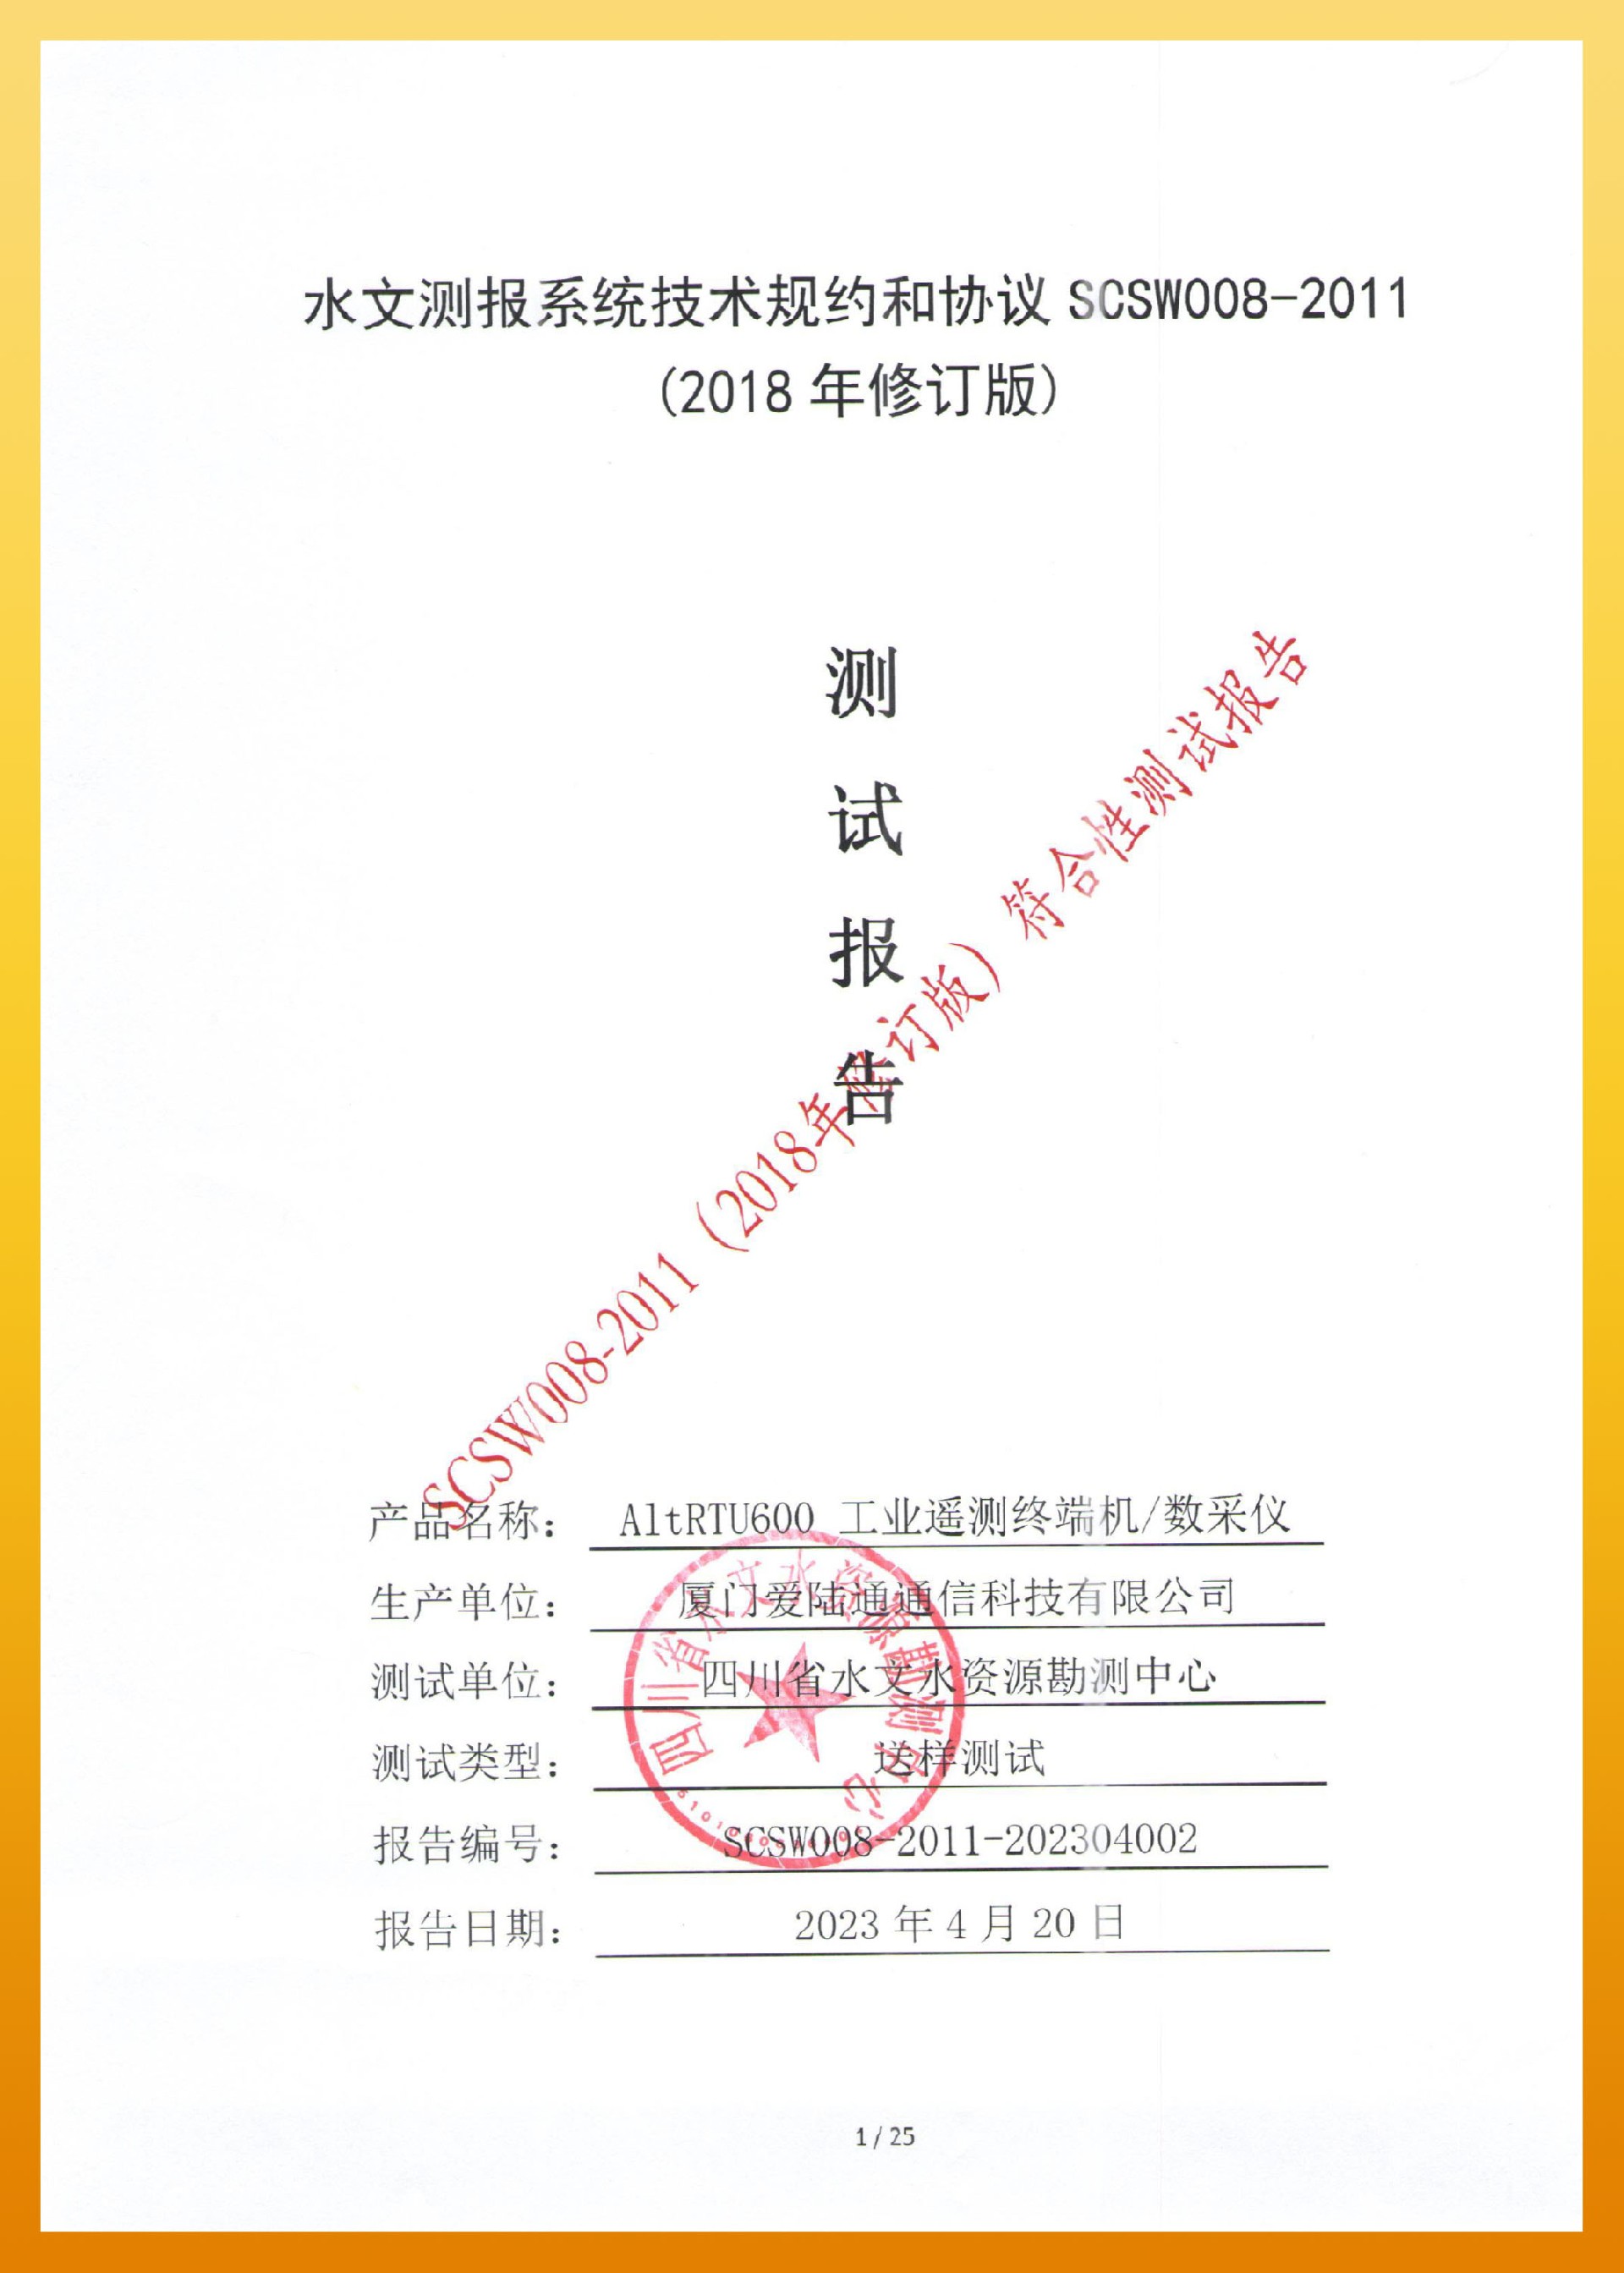 愛陸通-四川水文測報系統技術規約和協議 SCSW008-2011-1.jpg